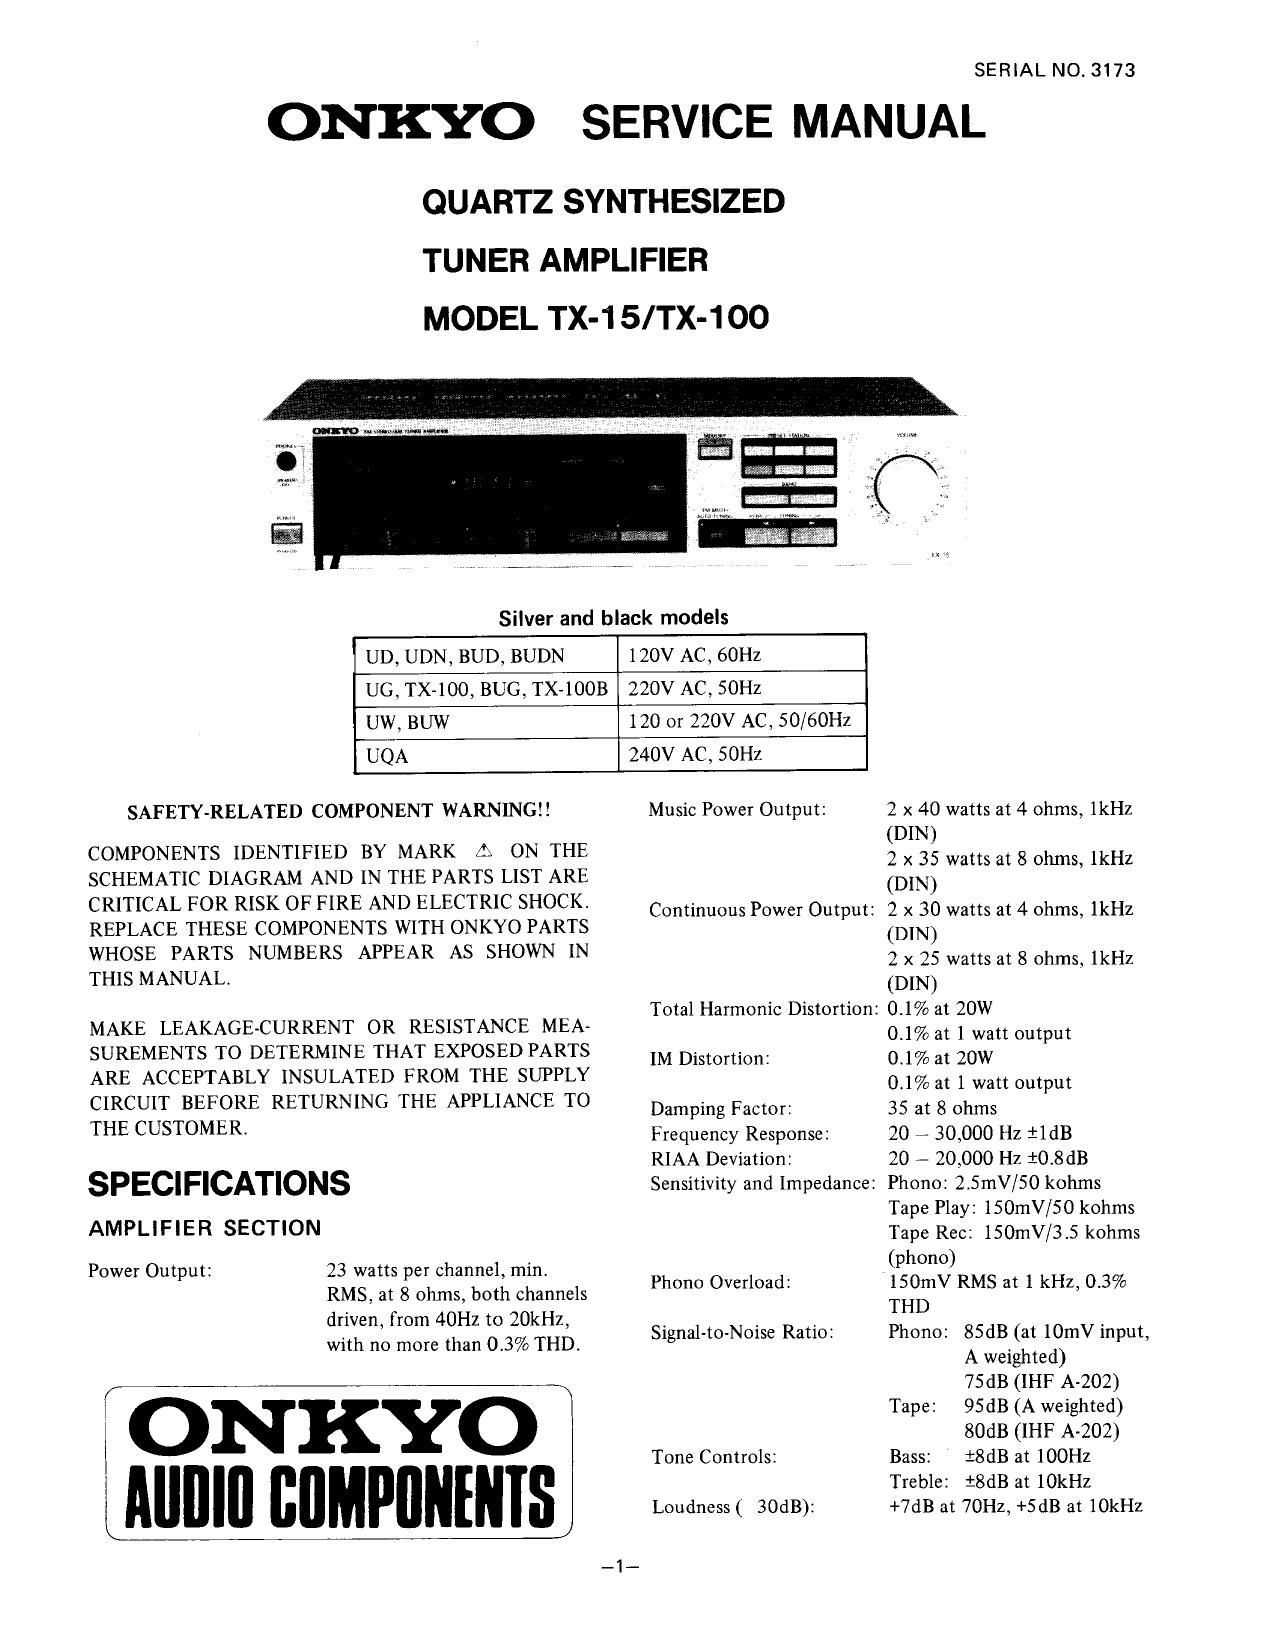 Onkyo TX 100 Service Manual